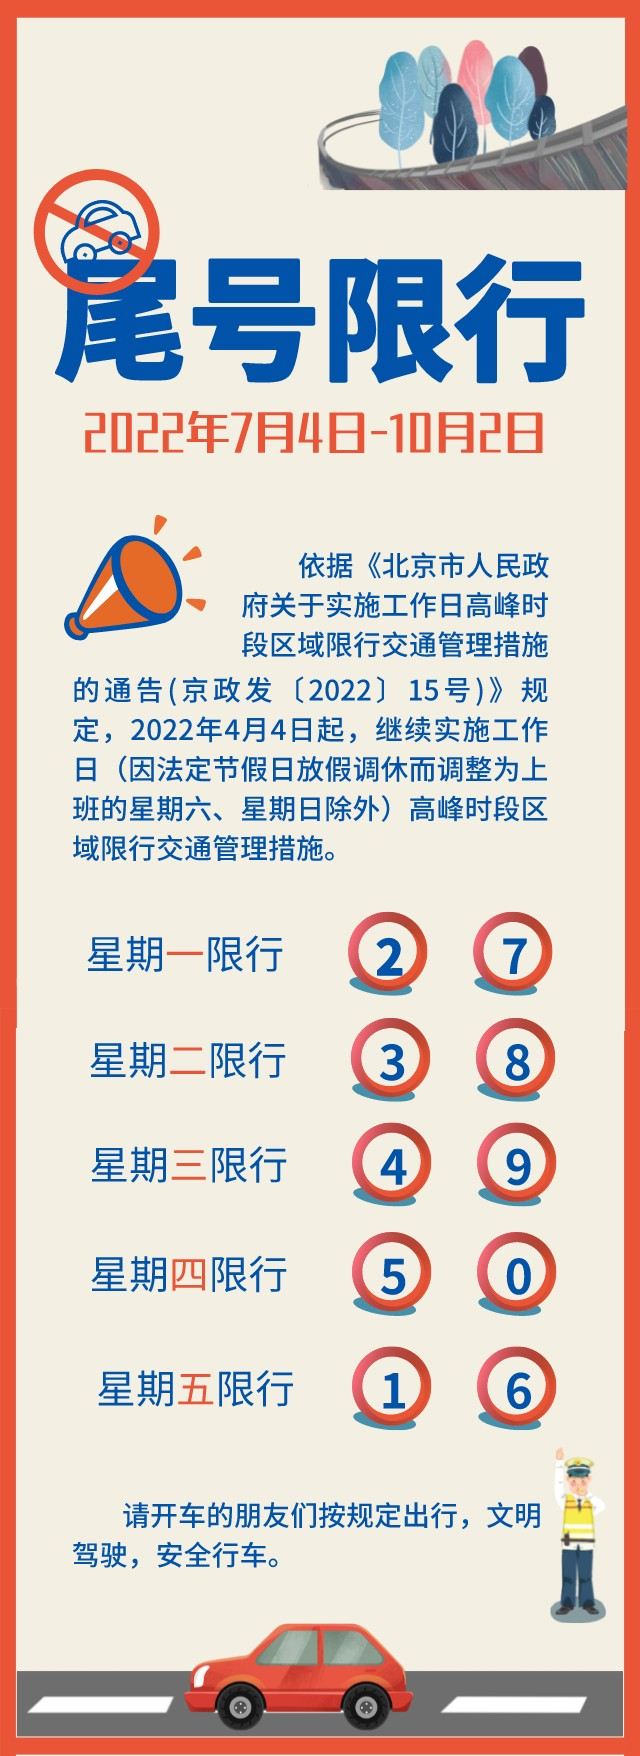 7月4日起,北京实行新一轮尾号限行措施